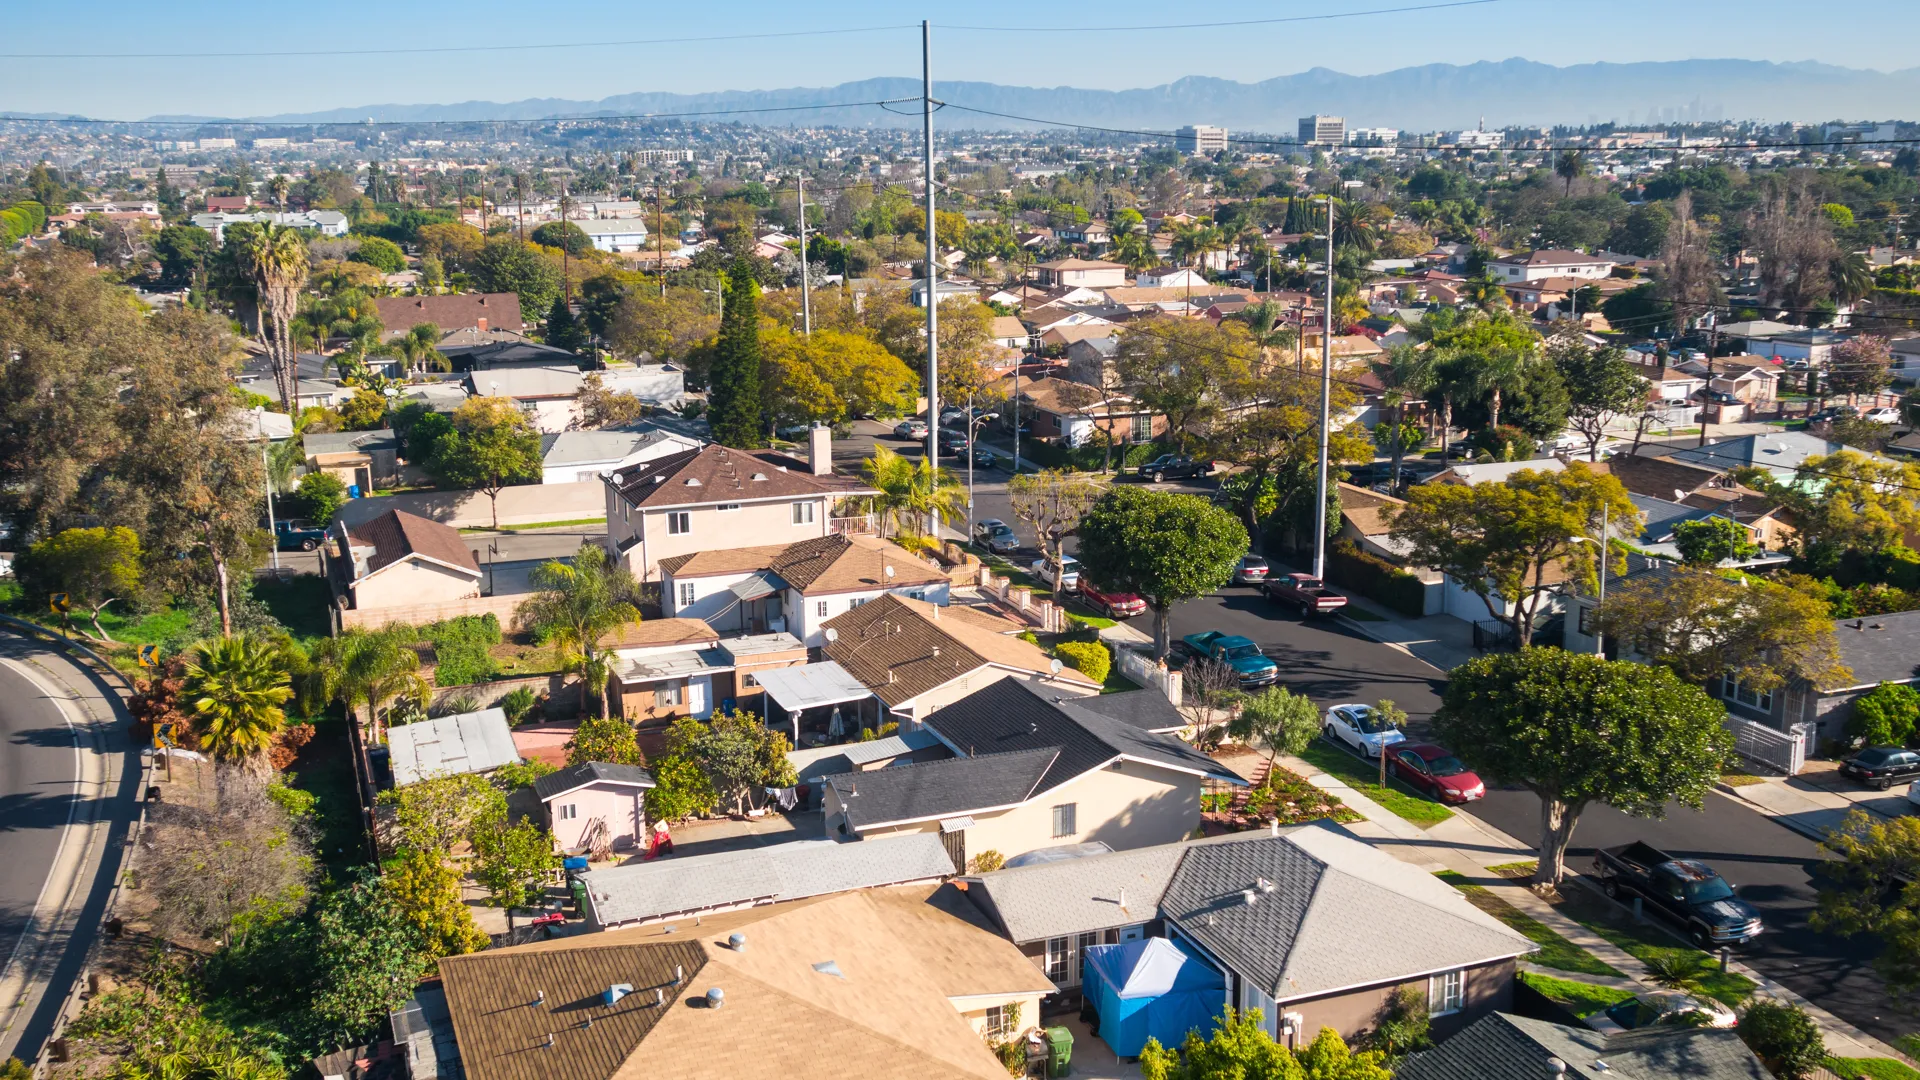 这张照片拍摄于美国加利福尼亚州洛杉矶英格尔伍德地区的一个带有房屋和屋顶的居民区。